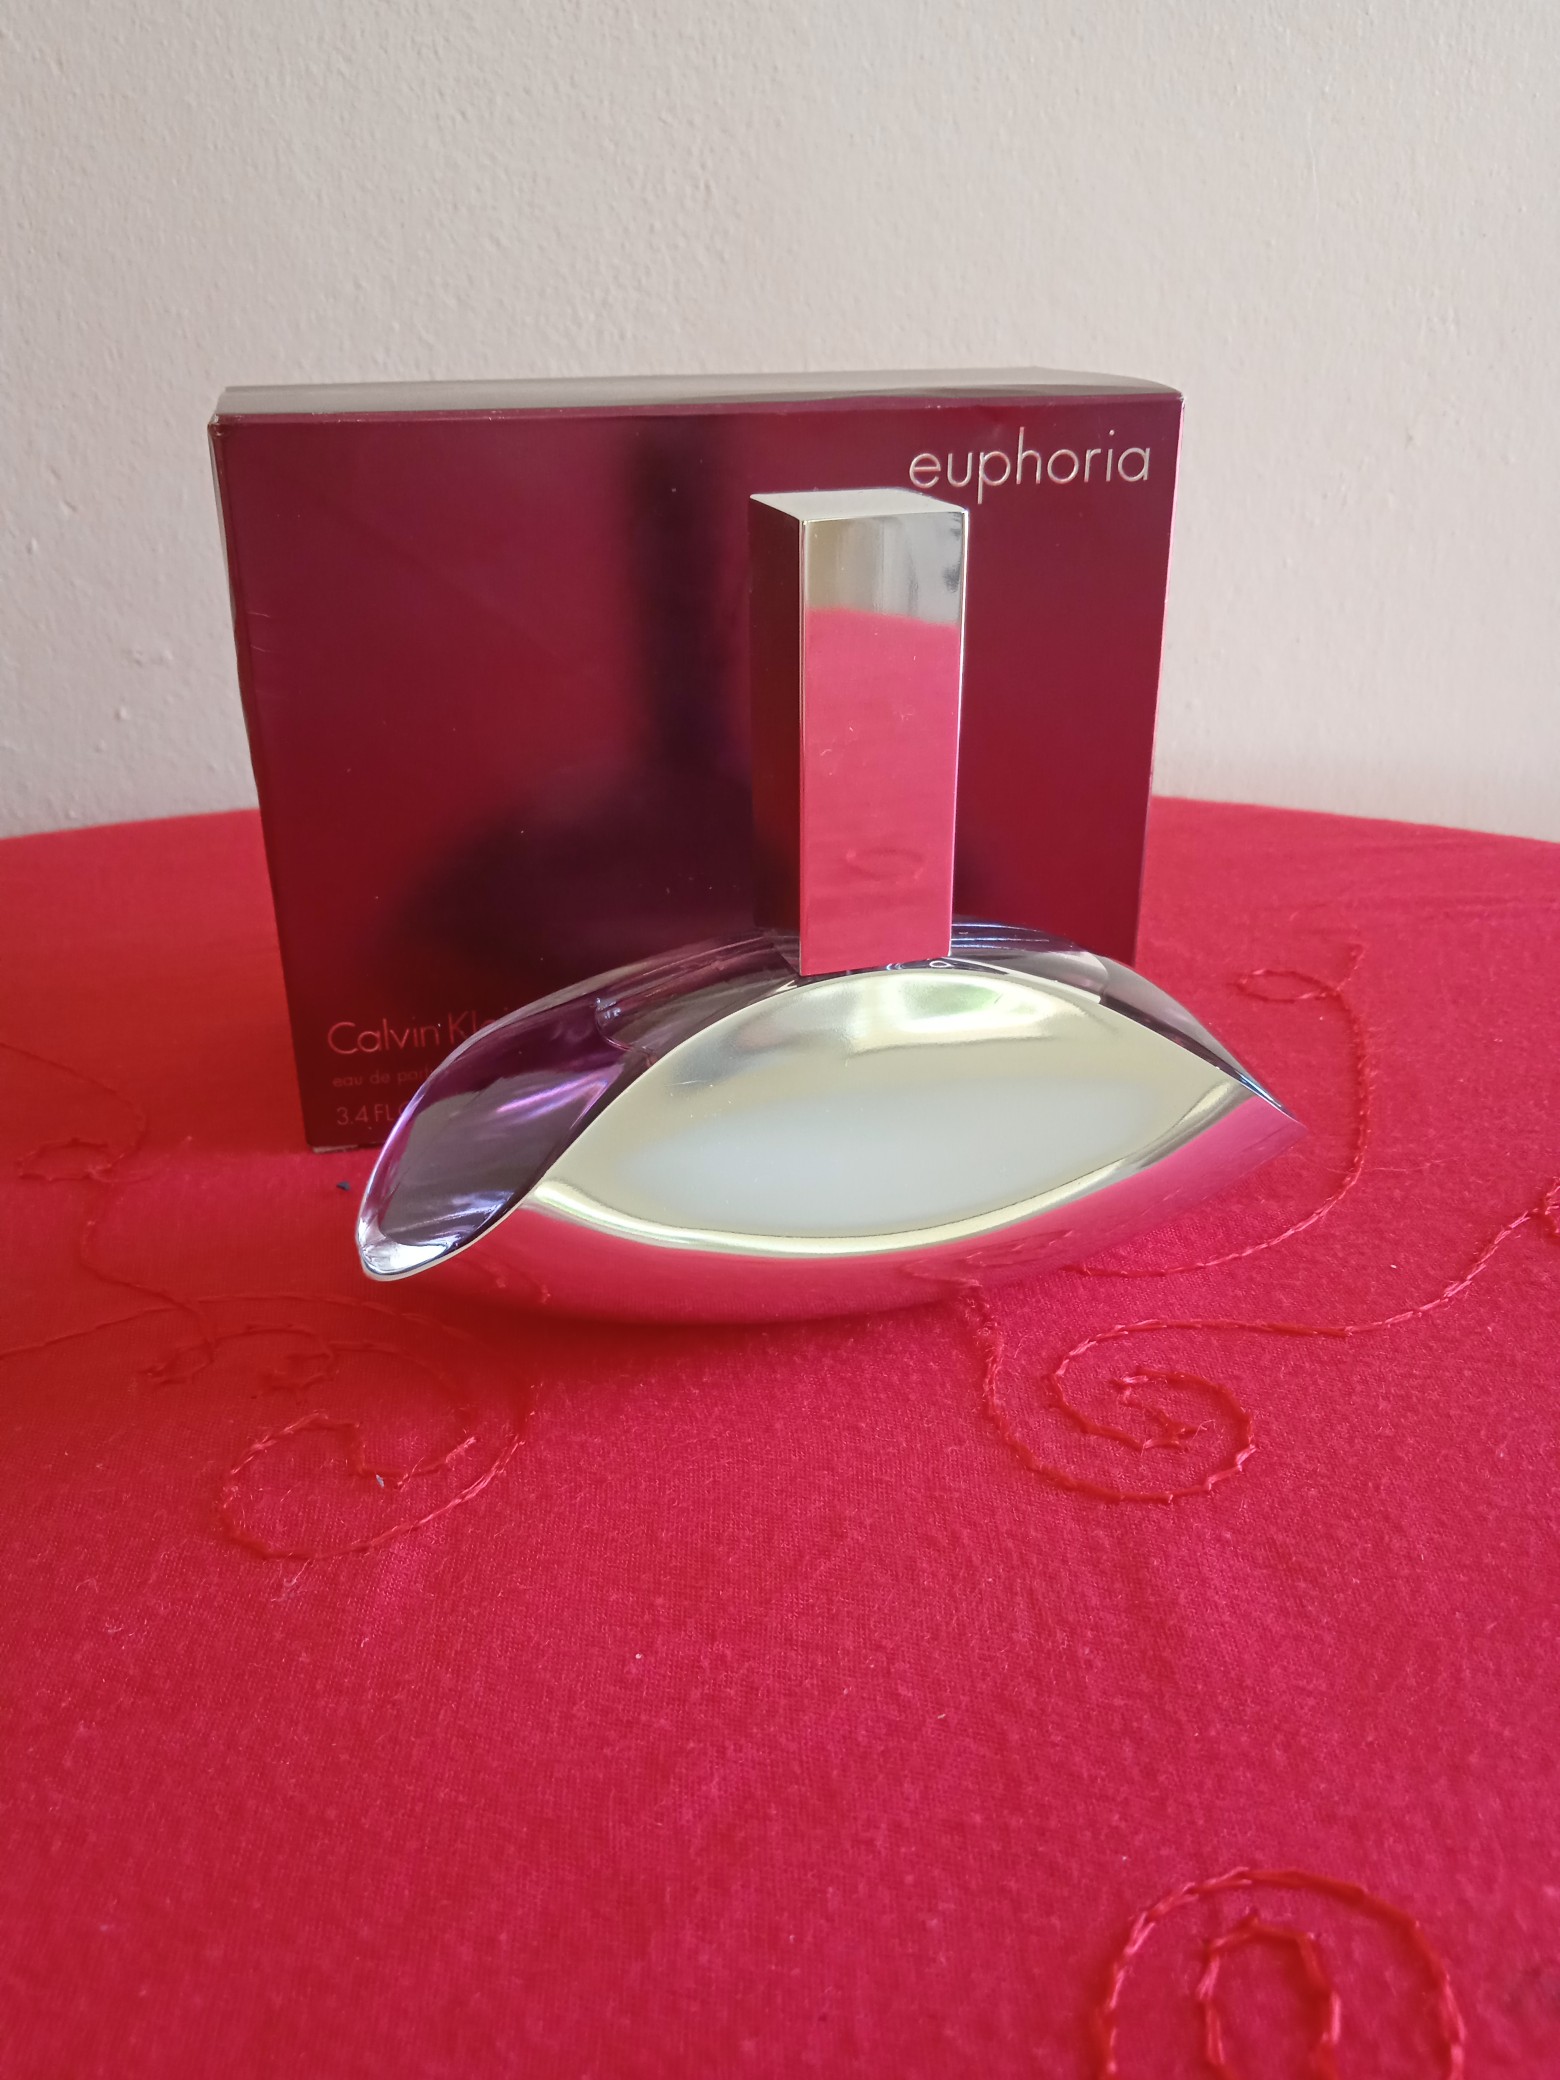 joyas, relojes y accesorios - Perfume Euphoria-Kalvin Klein